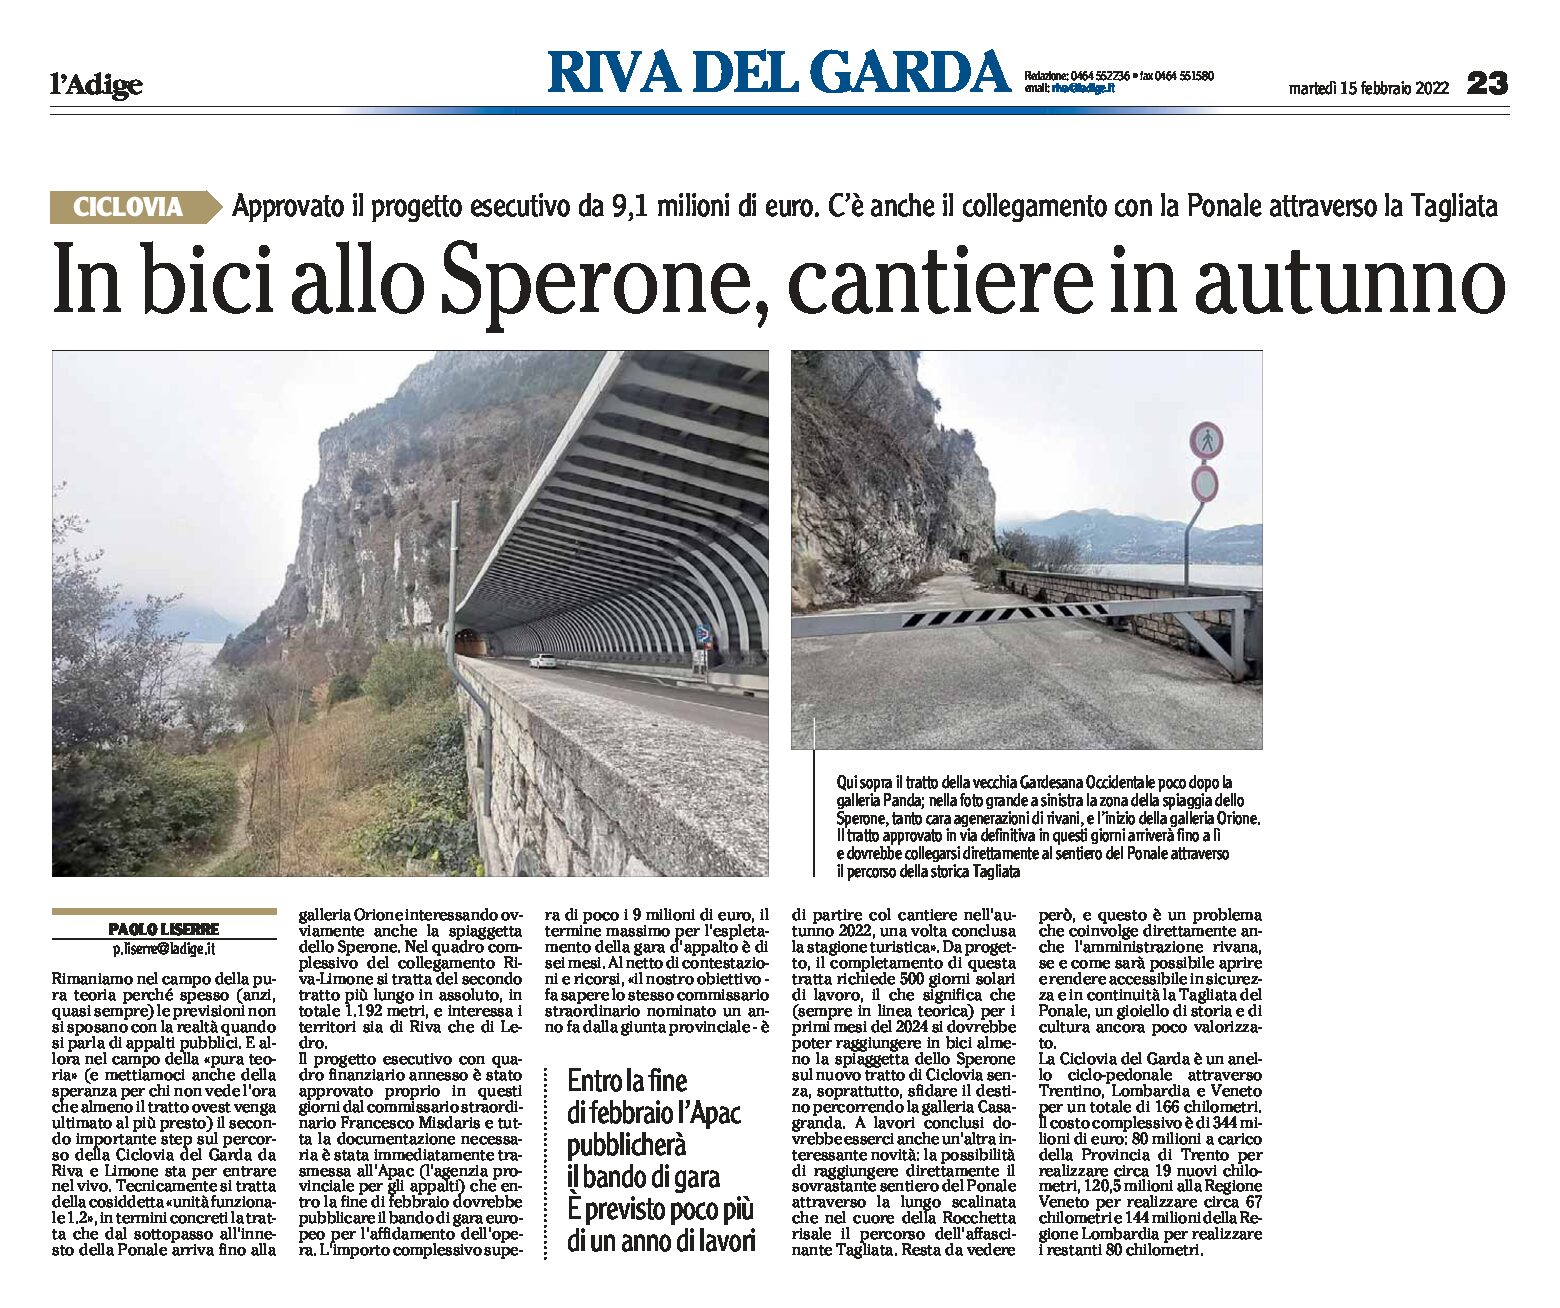 Ciclovia del Garda: in bici allo Sperone, cantiere in autunno